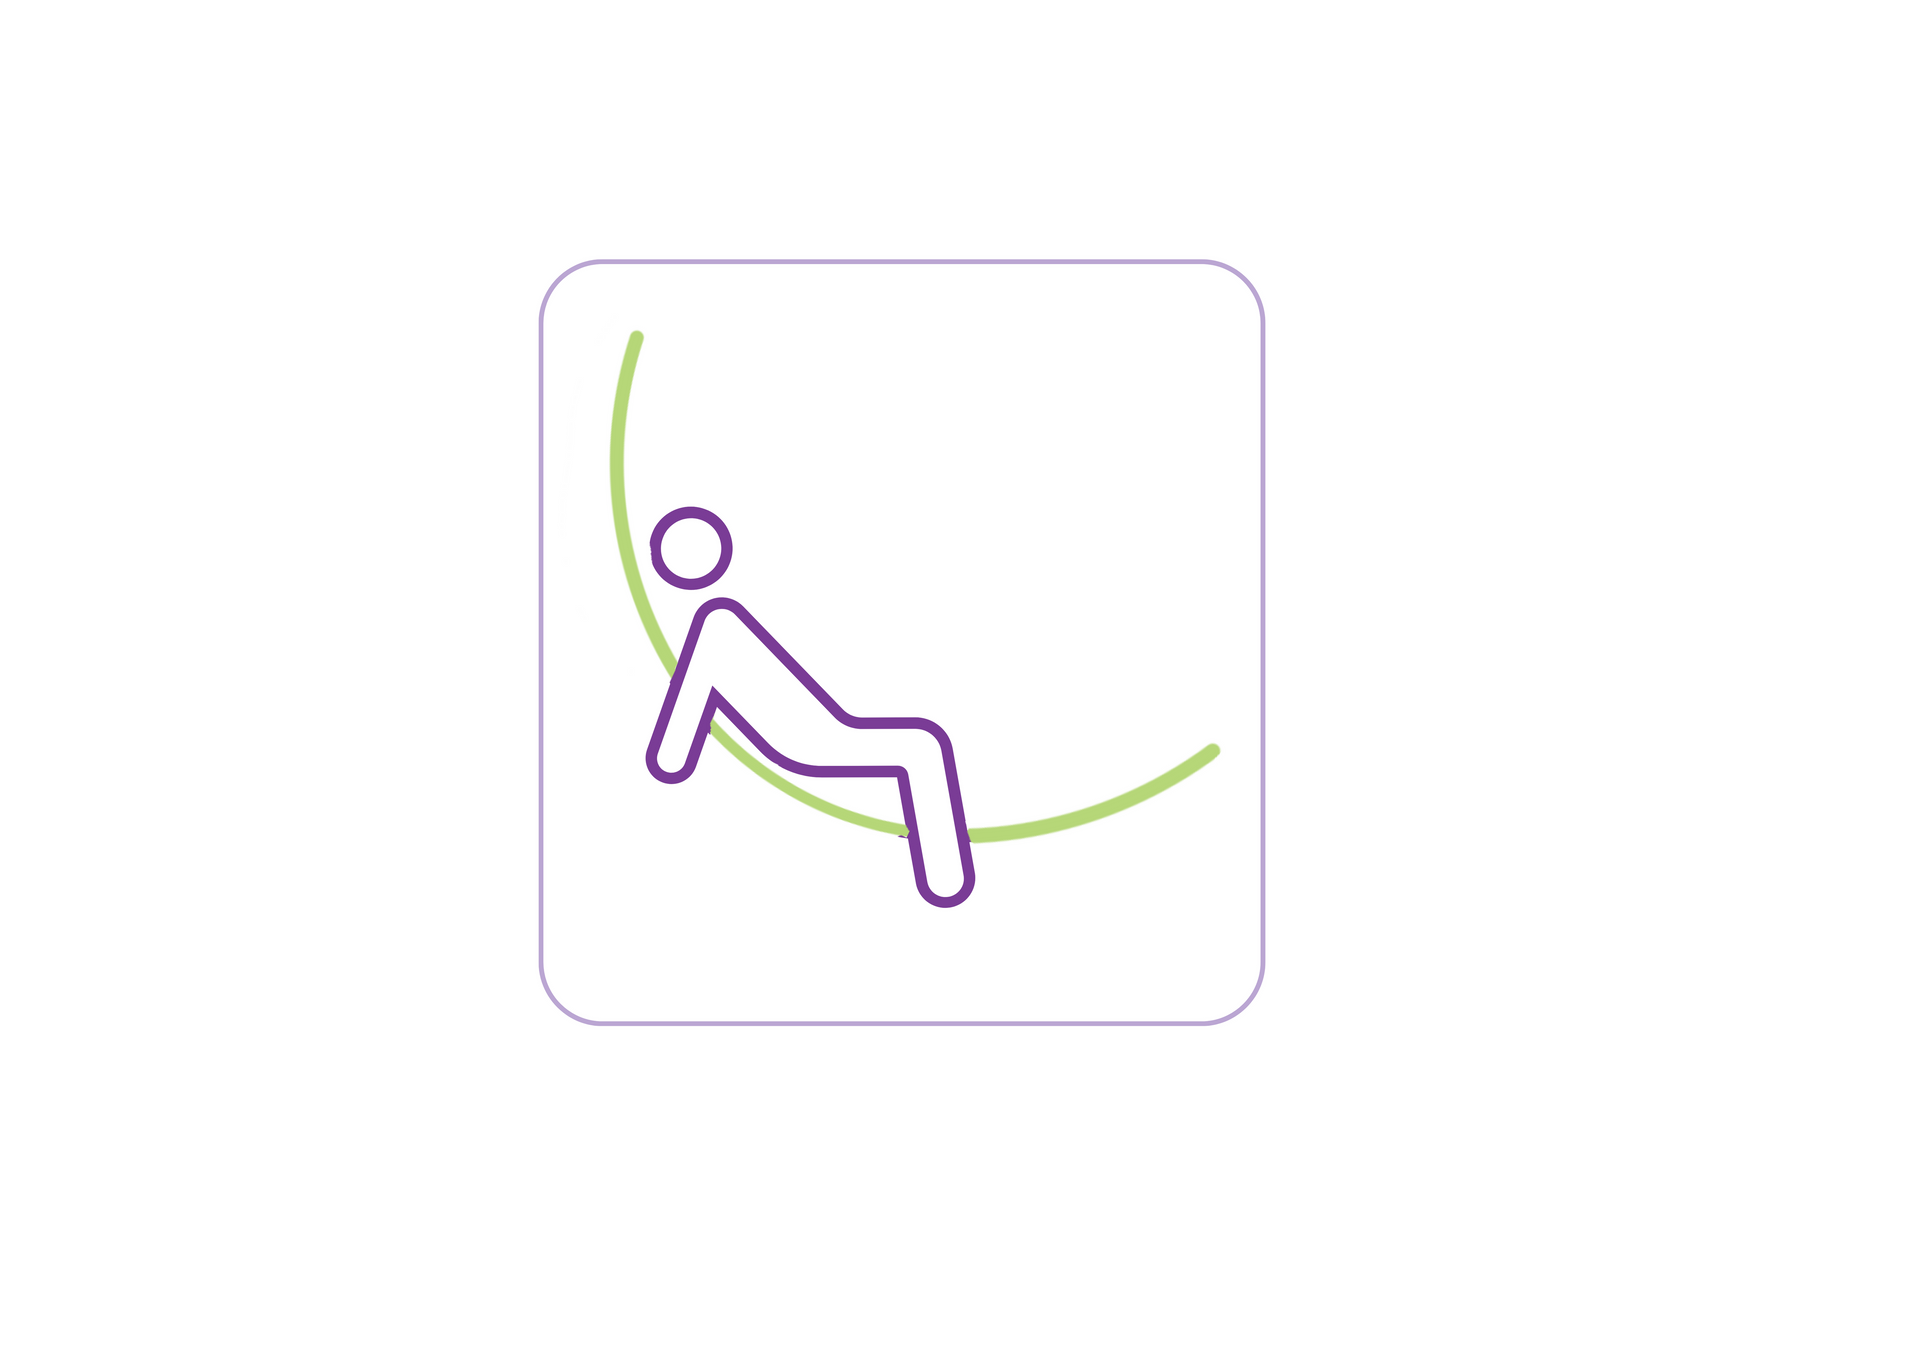 Une icône violette et verte représentant une personne assise sur une corde.